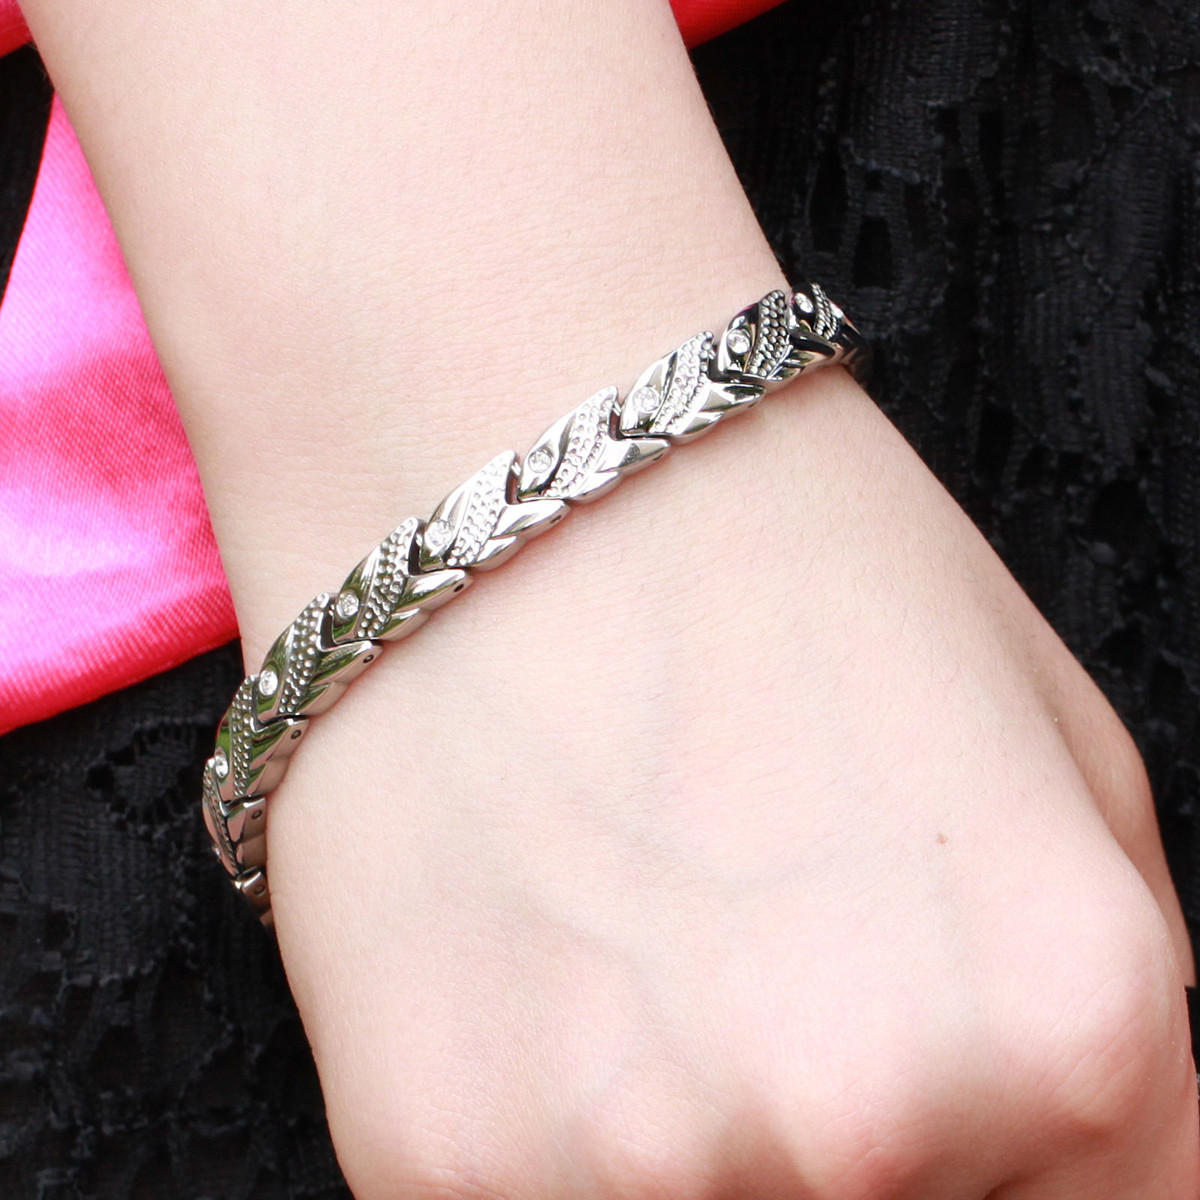 Magnetic Healing Health Women Bracelet Stainless Steel Jewelry